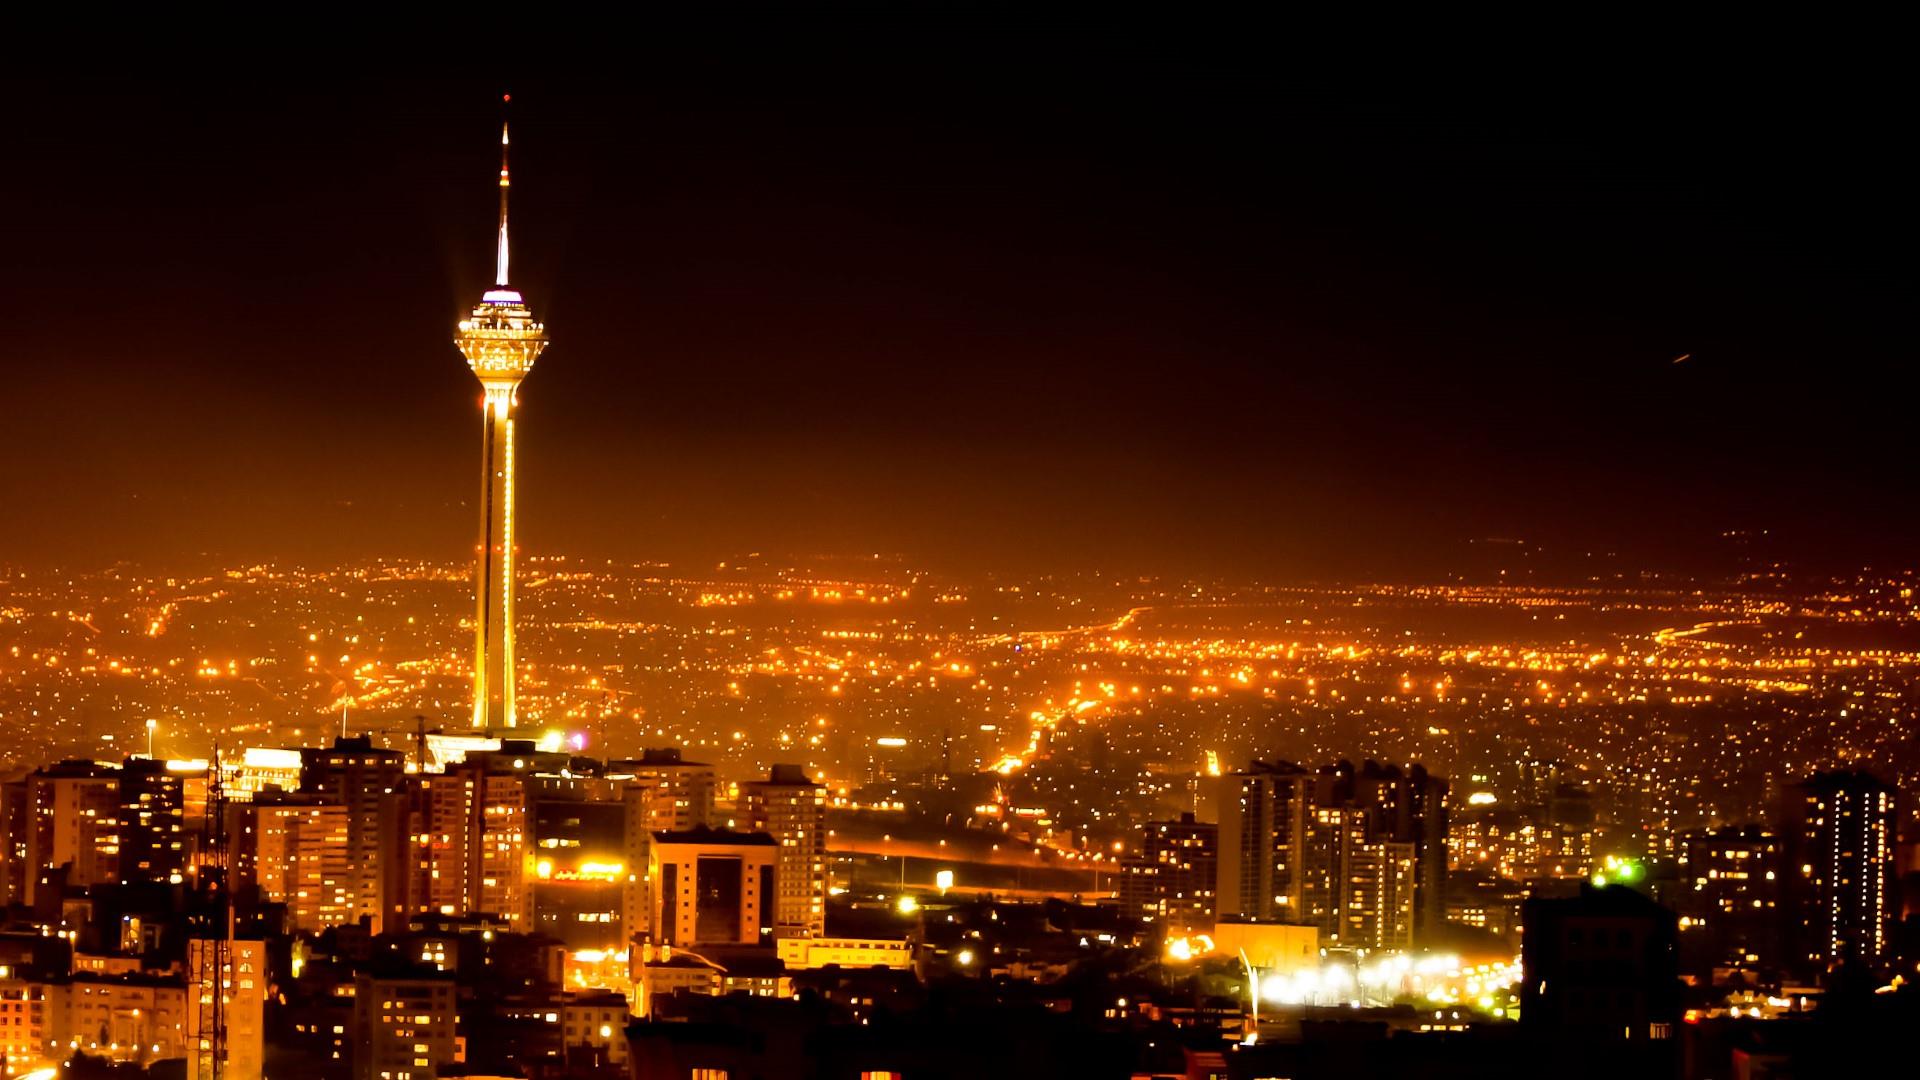 Milad Tower In Tehran Tehran At Night Backiee